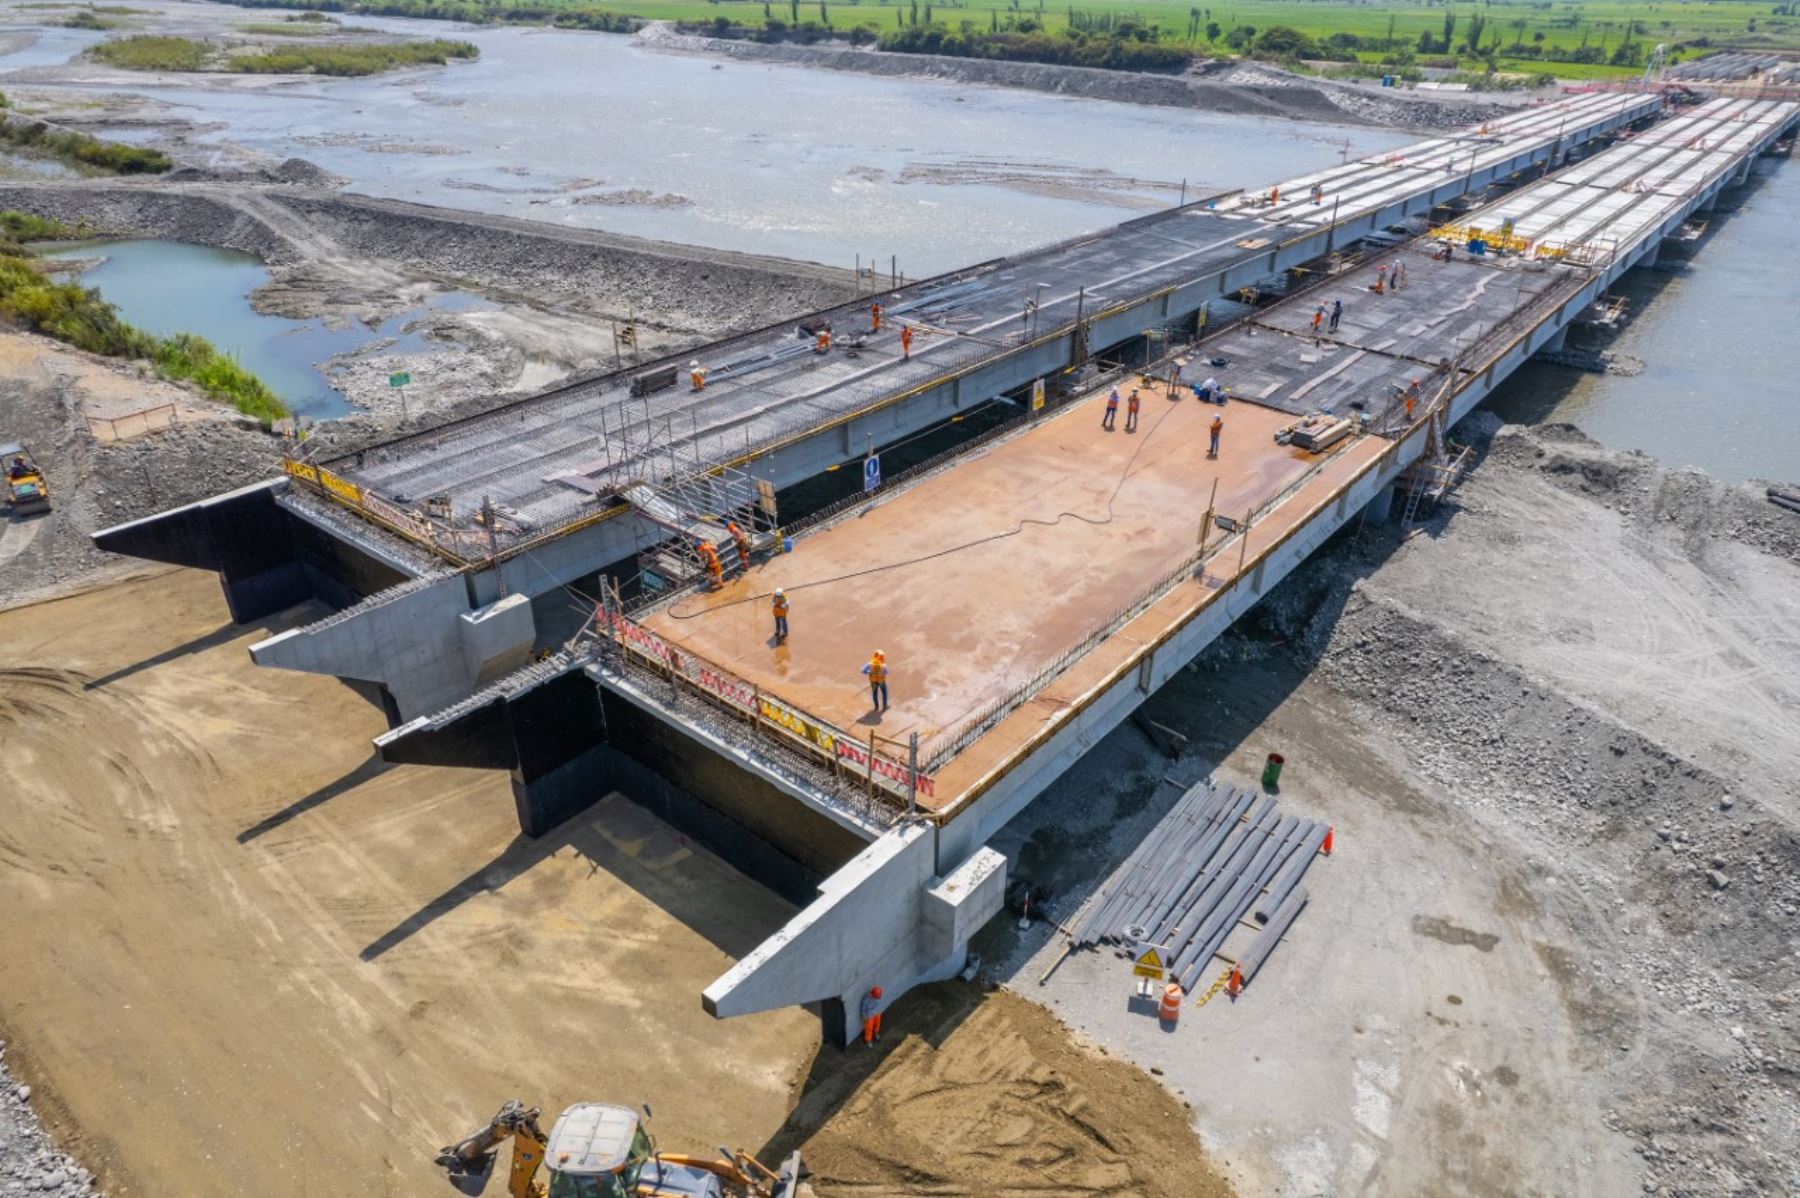 “El puente está proyectado para soportar caudales máximos y fenómenos de erosión, asegurando la continuidad del tránsito entre el norte y el resto del país”